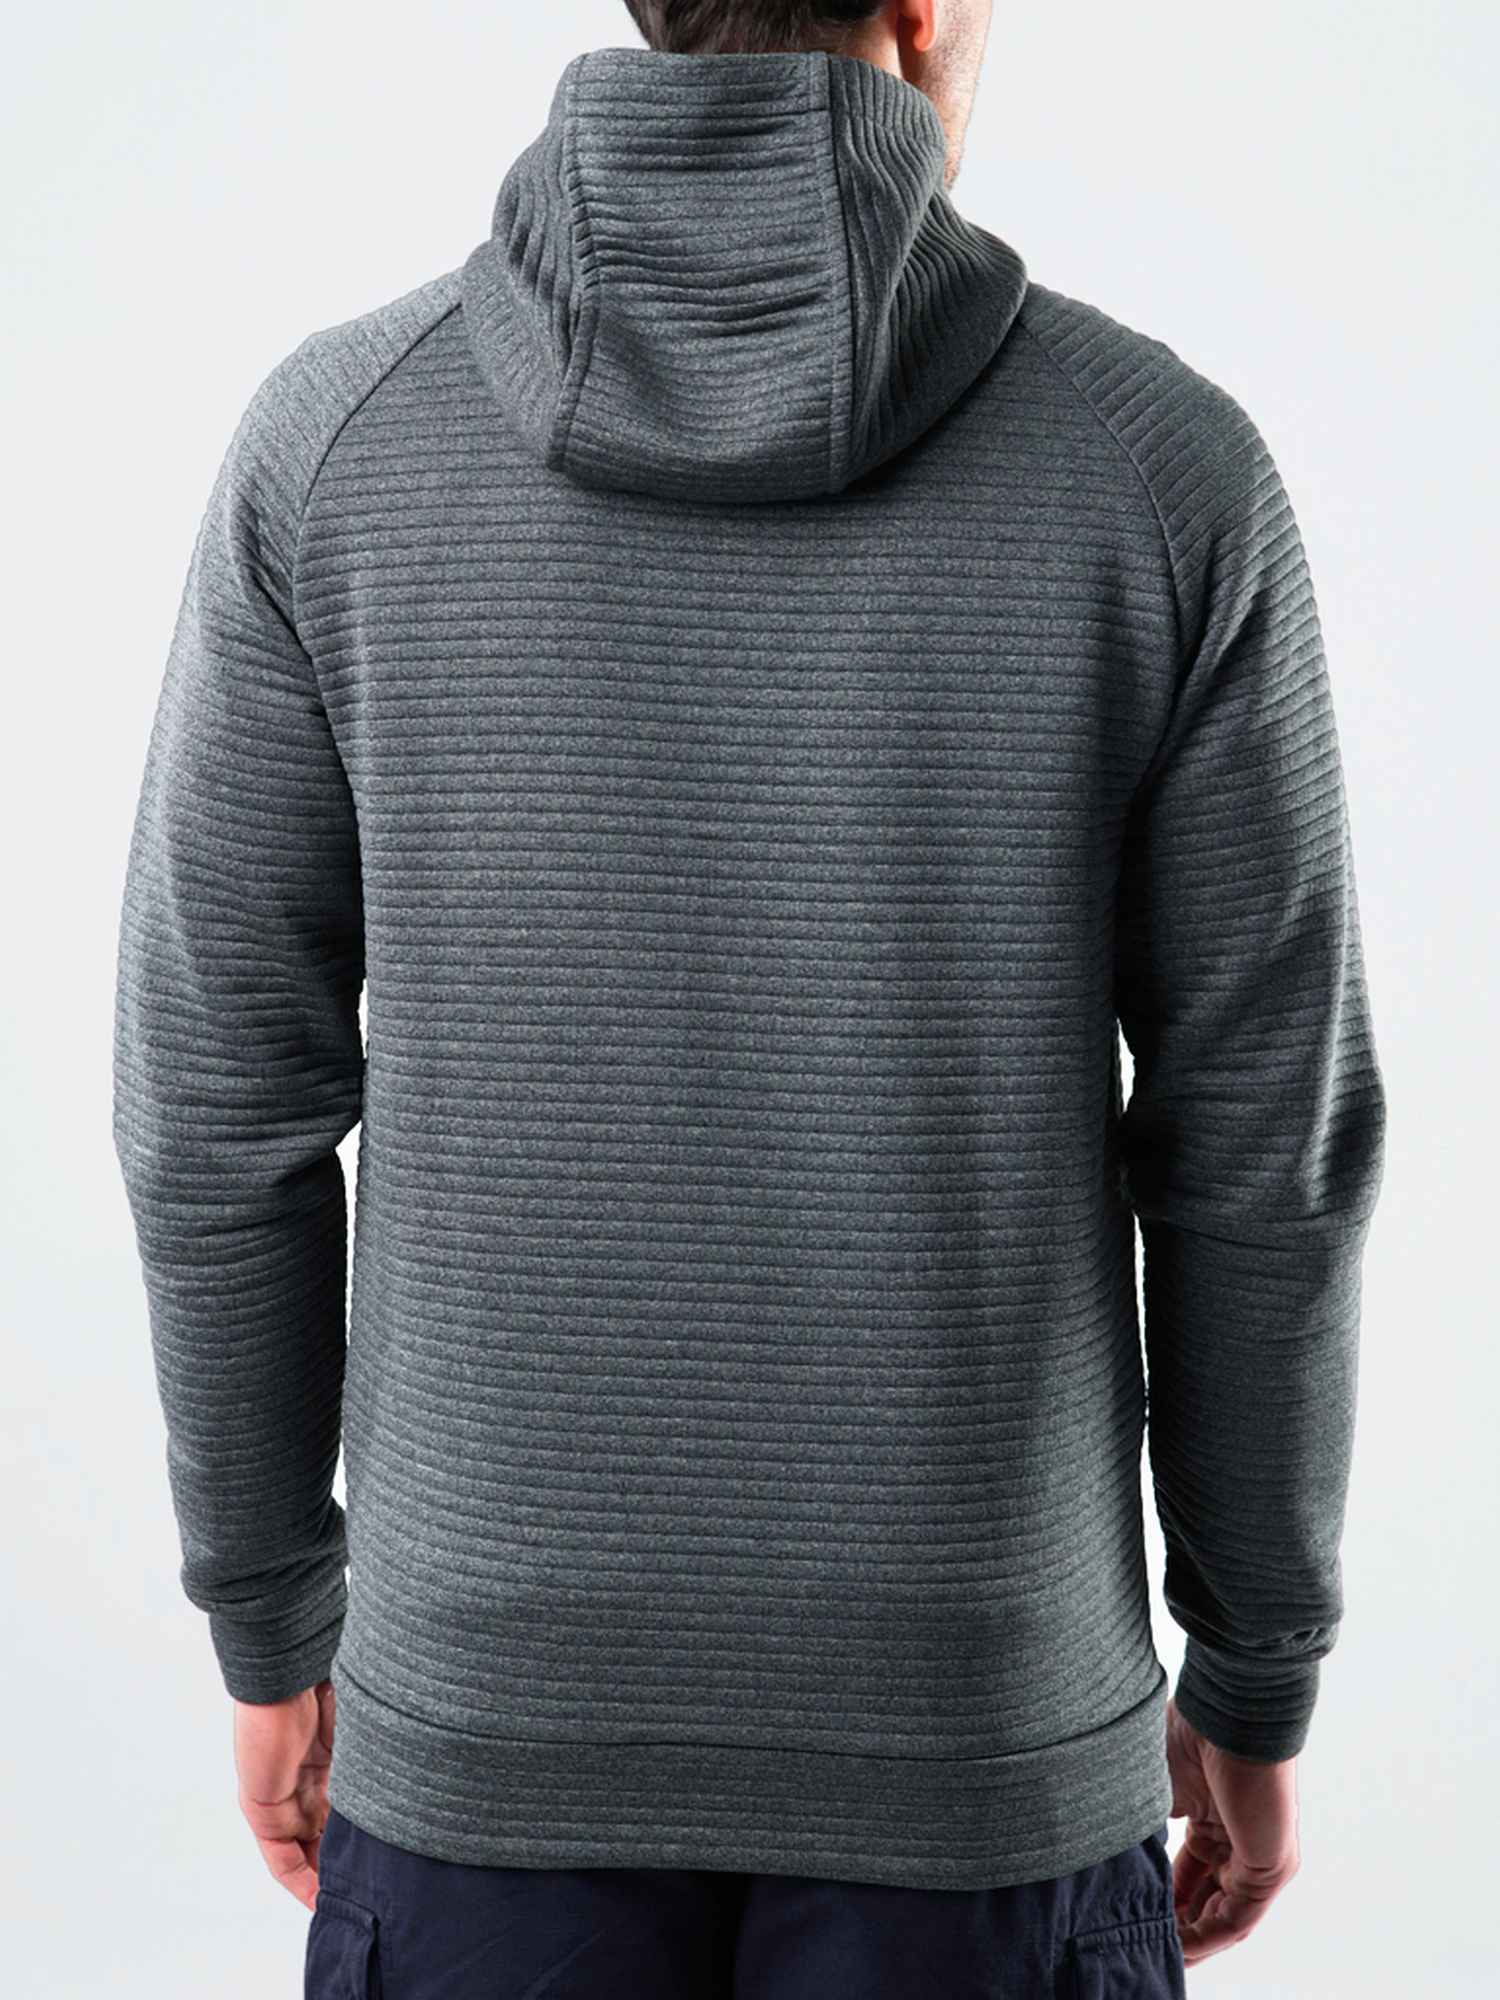 Men’s functional sweatshirt